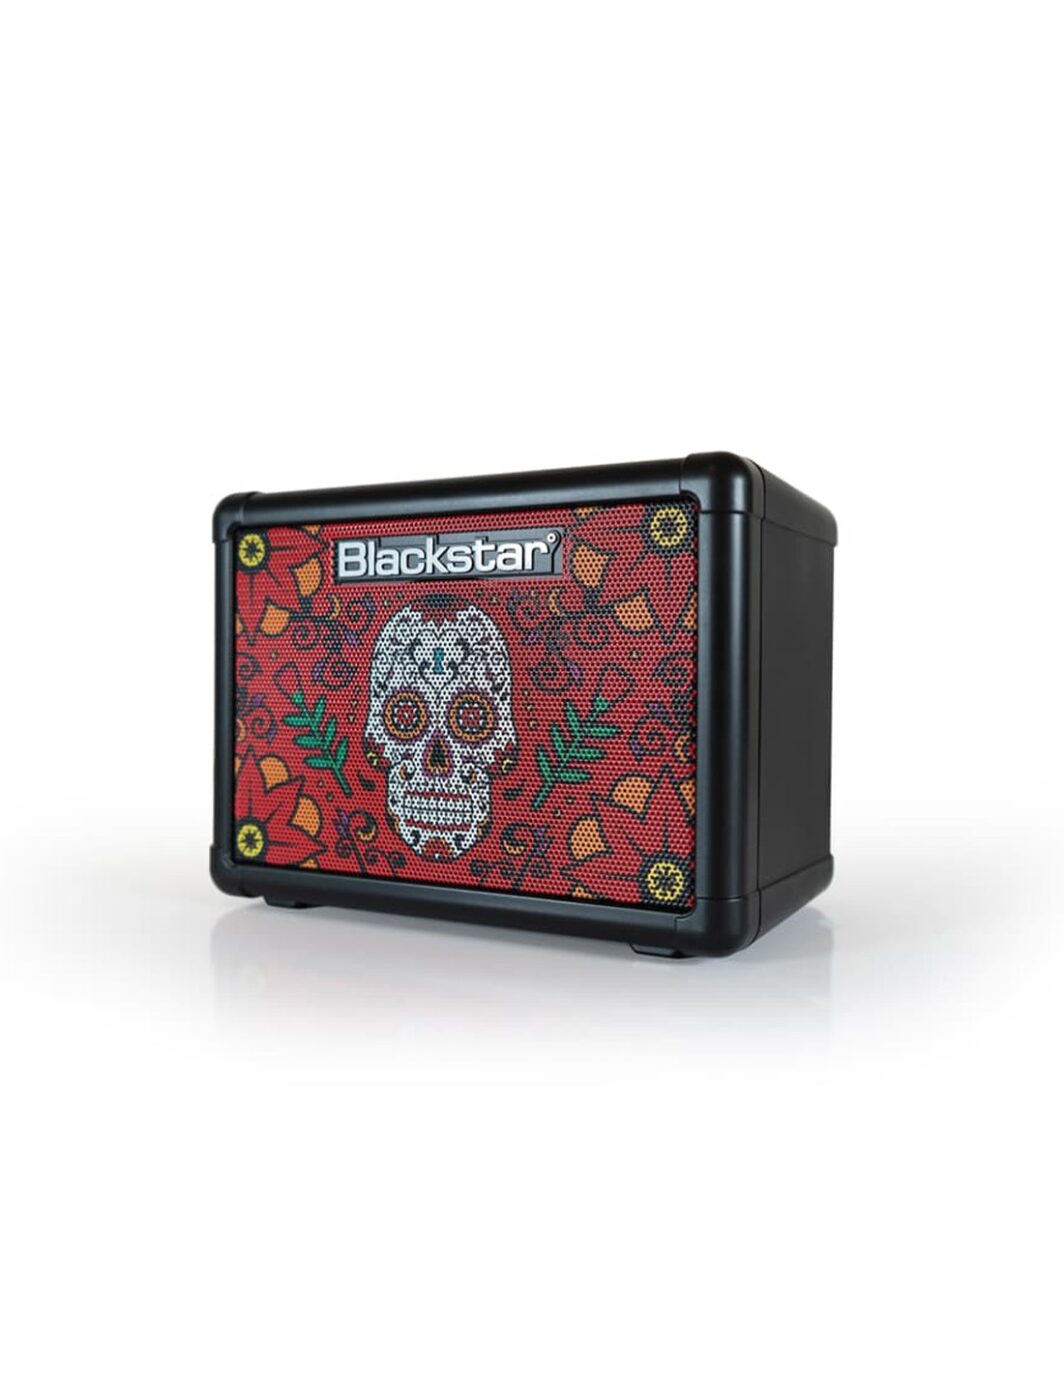 Blackstar FLY 3 Sugar Skull 2 Mini Amp Limited Edition 3W 1x3" Mini Amp